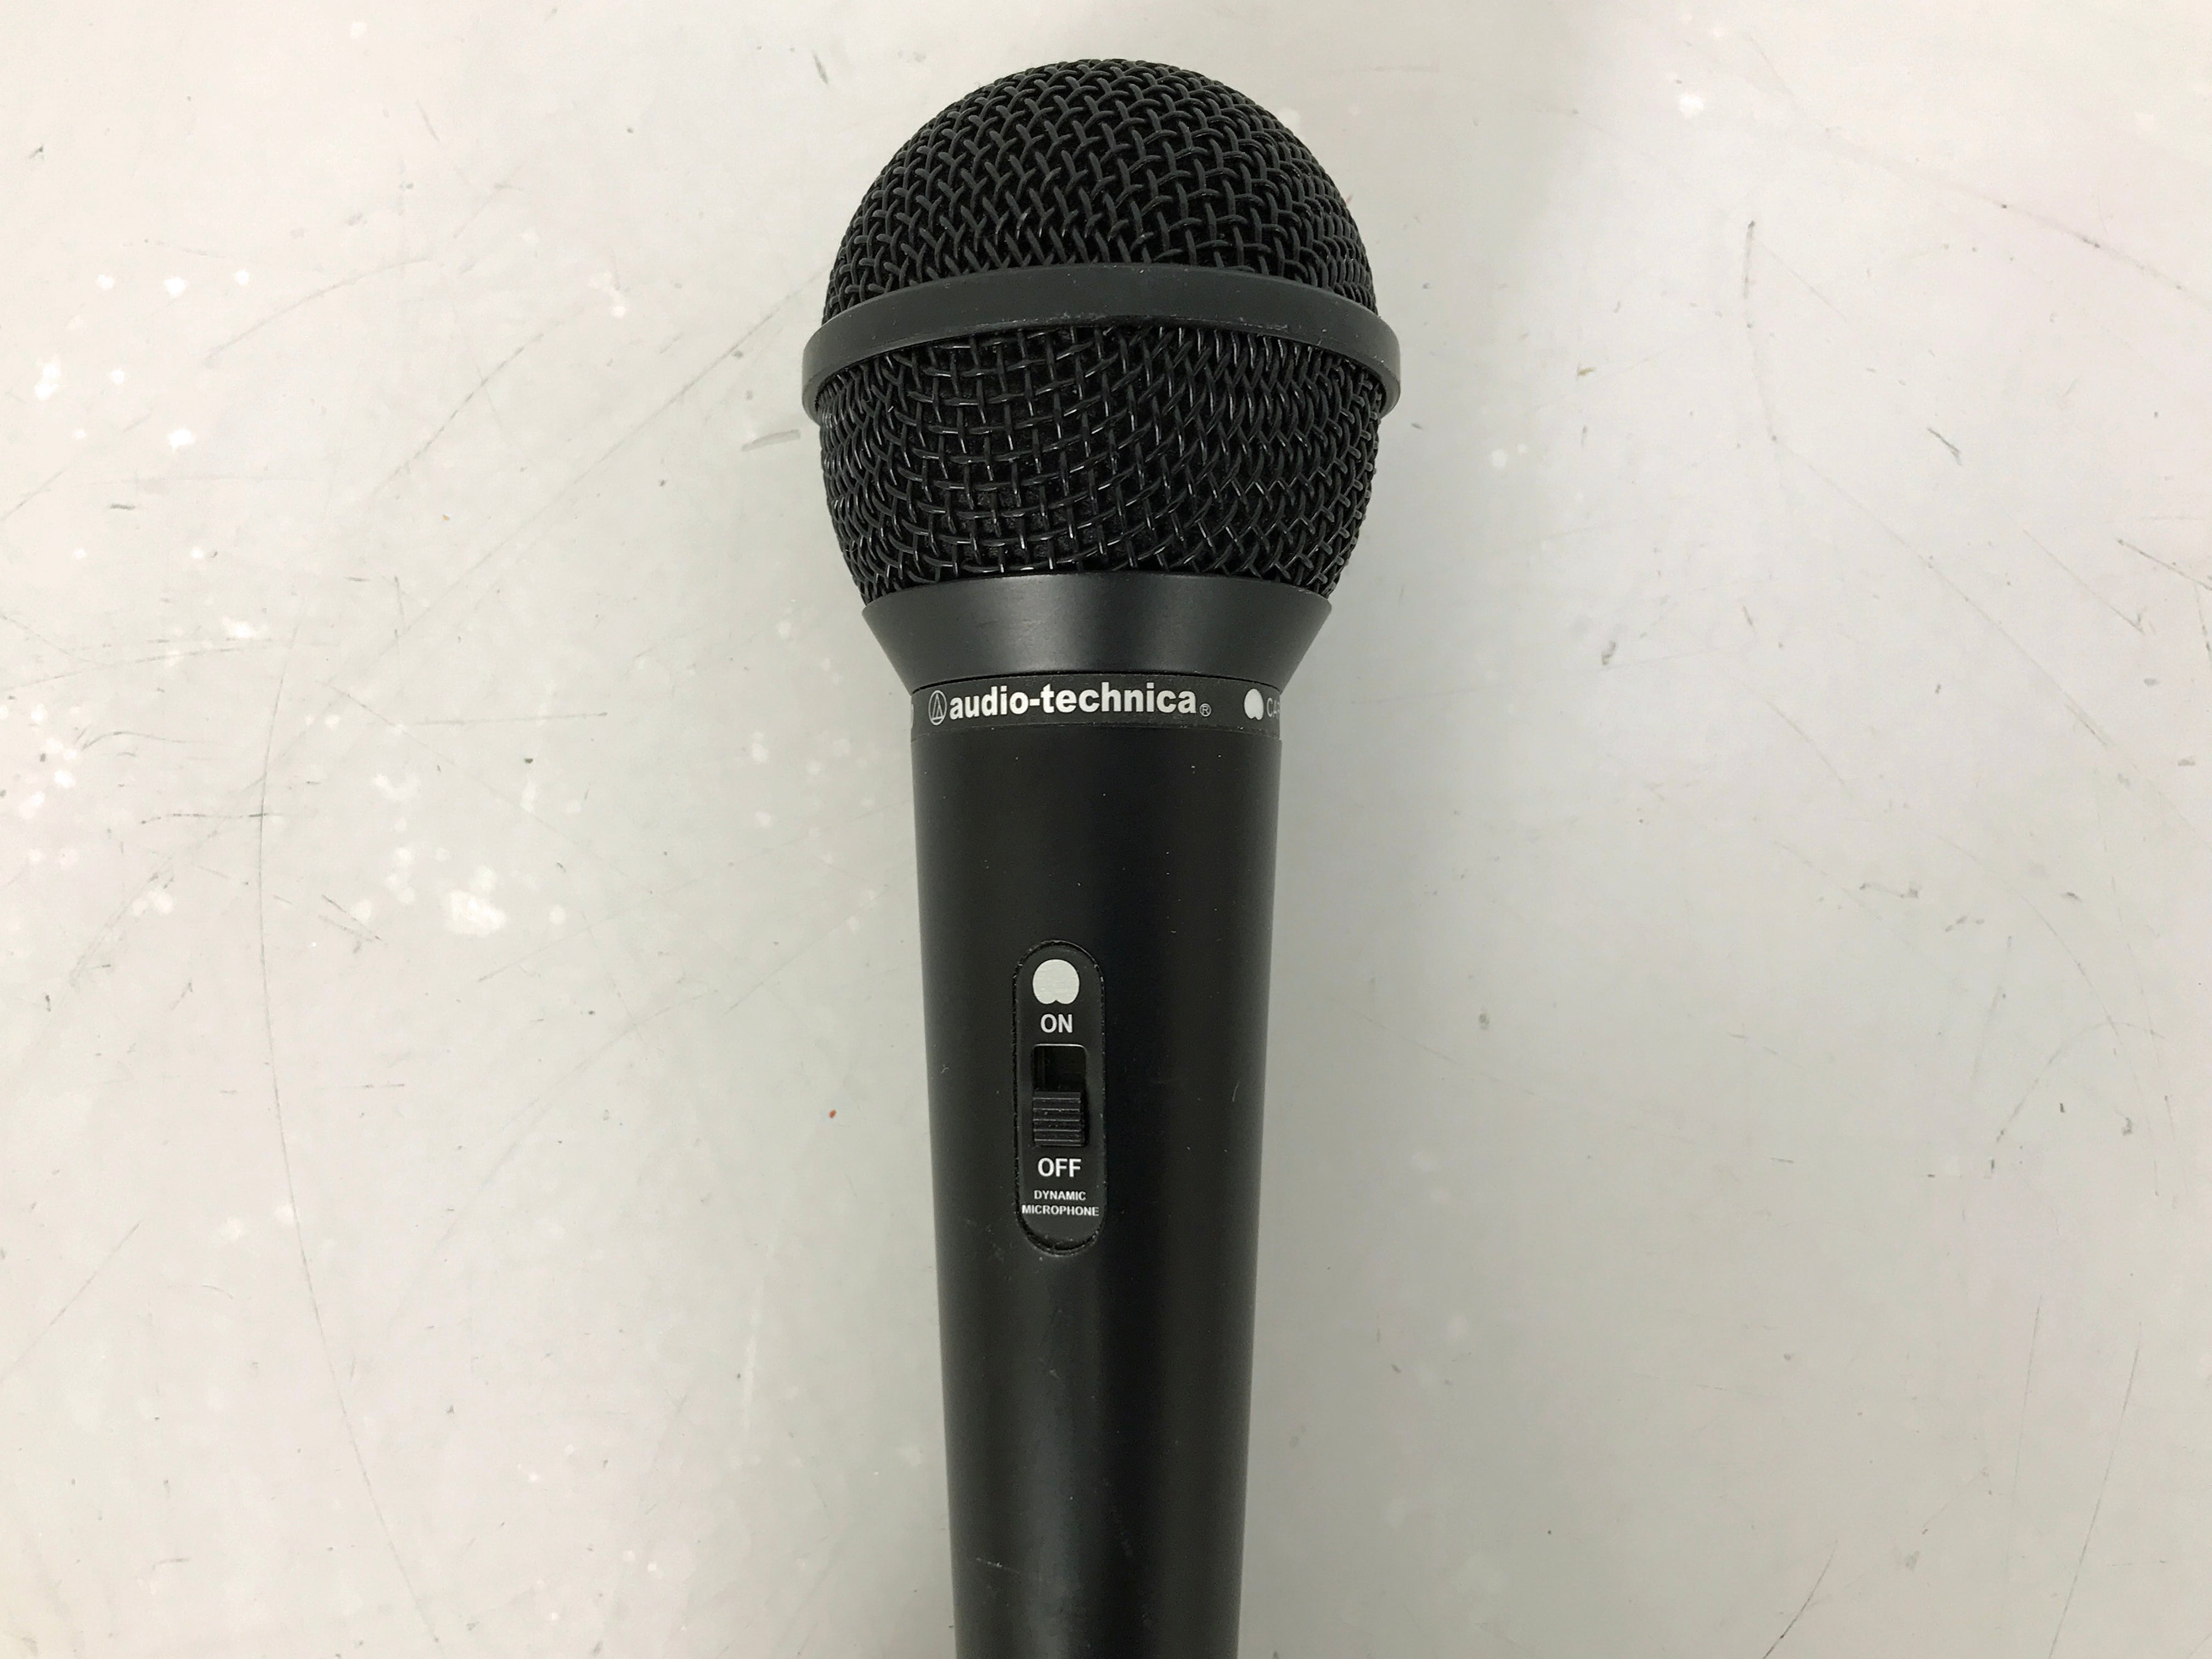 Audio Technica ATR20 Cardioid Dynamic Microphone